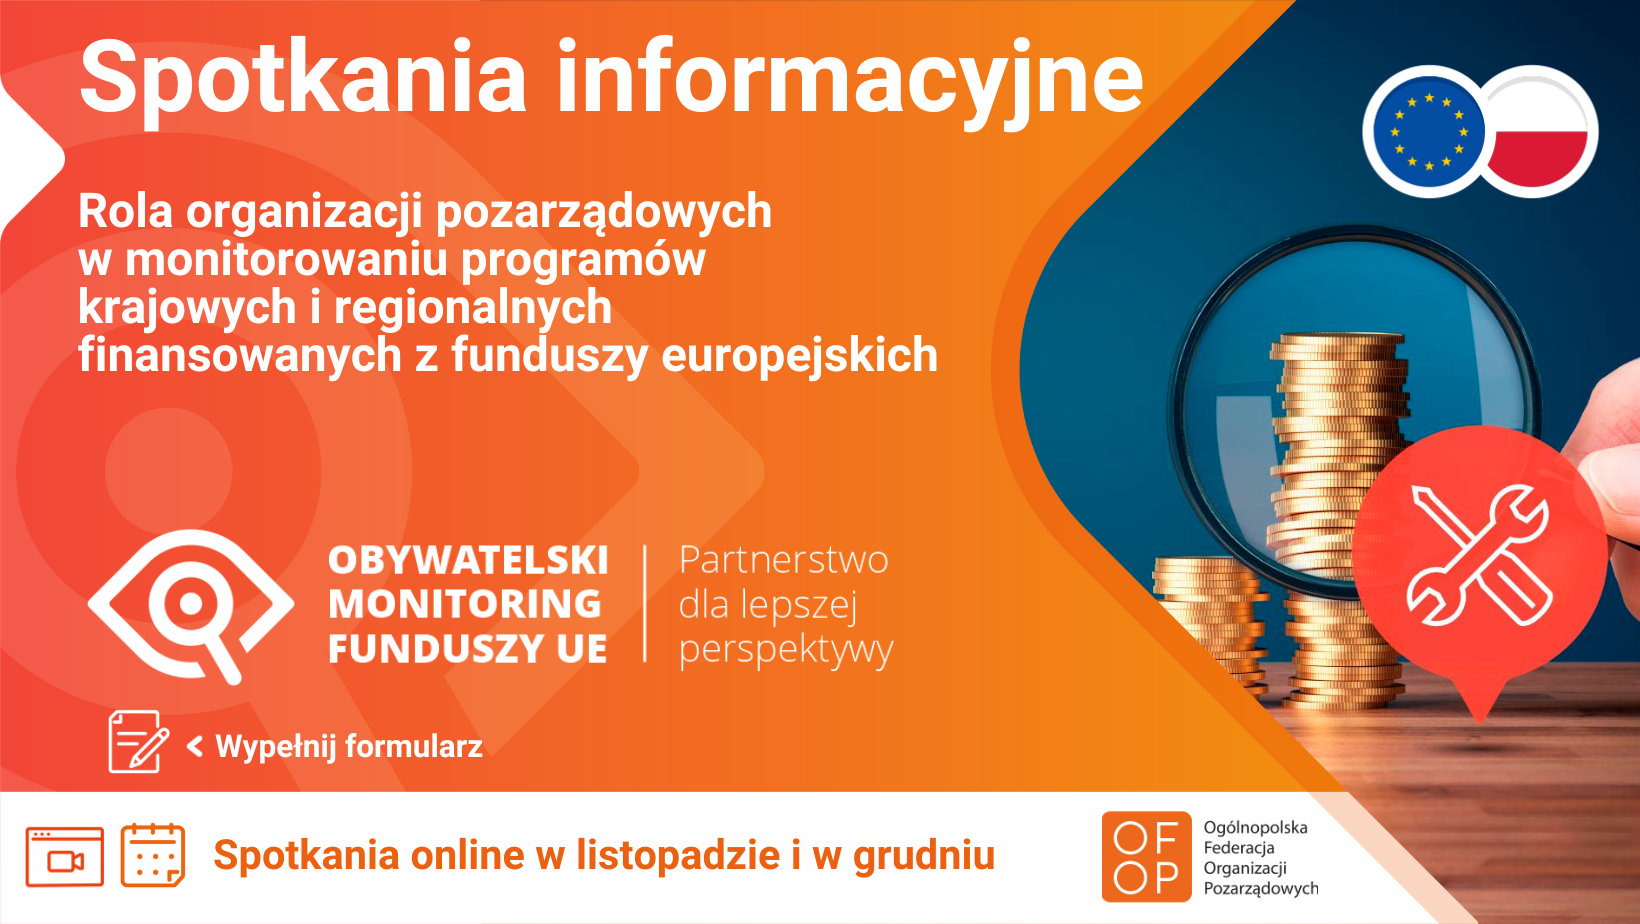 Plakat: Obywatelski monitoring funduszy europejskich - spotkania informacyjne. Rola organizacji pozarządowych w monitorowaniu programów krajowych i regionalnych finansowanych z funduszy europejskich